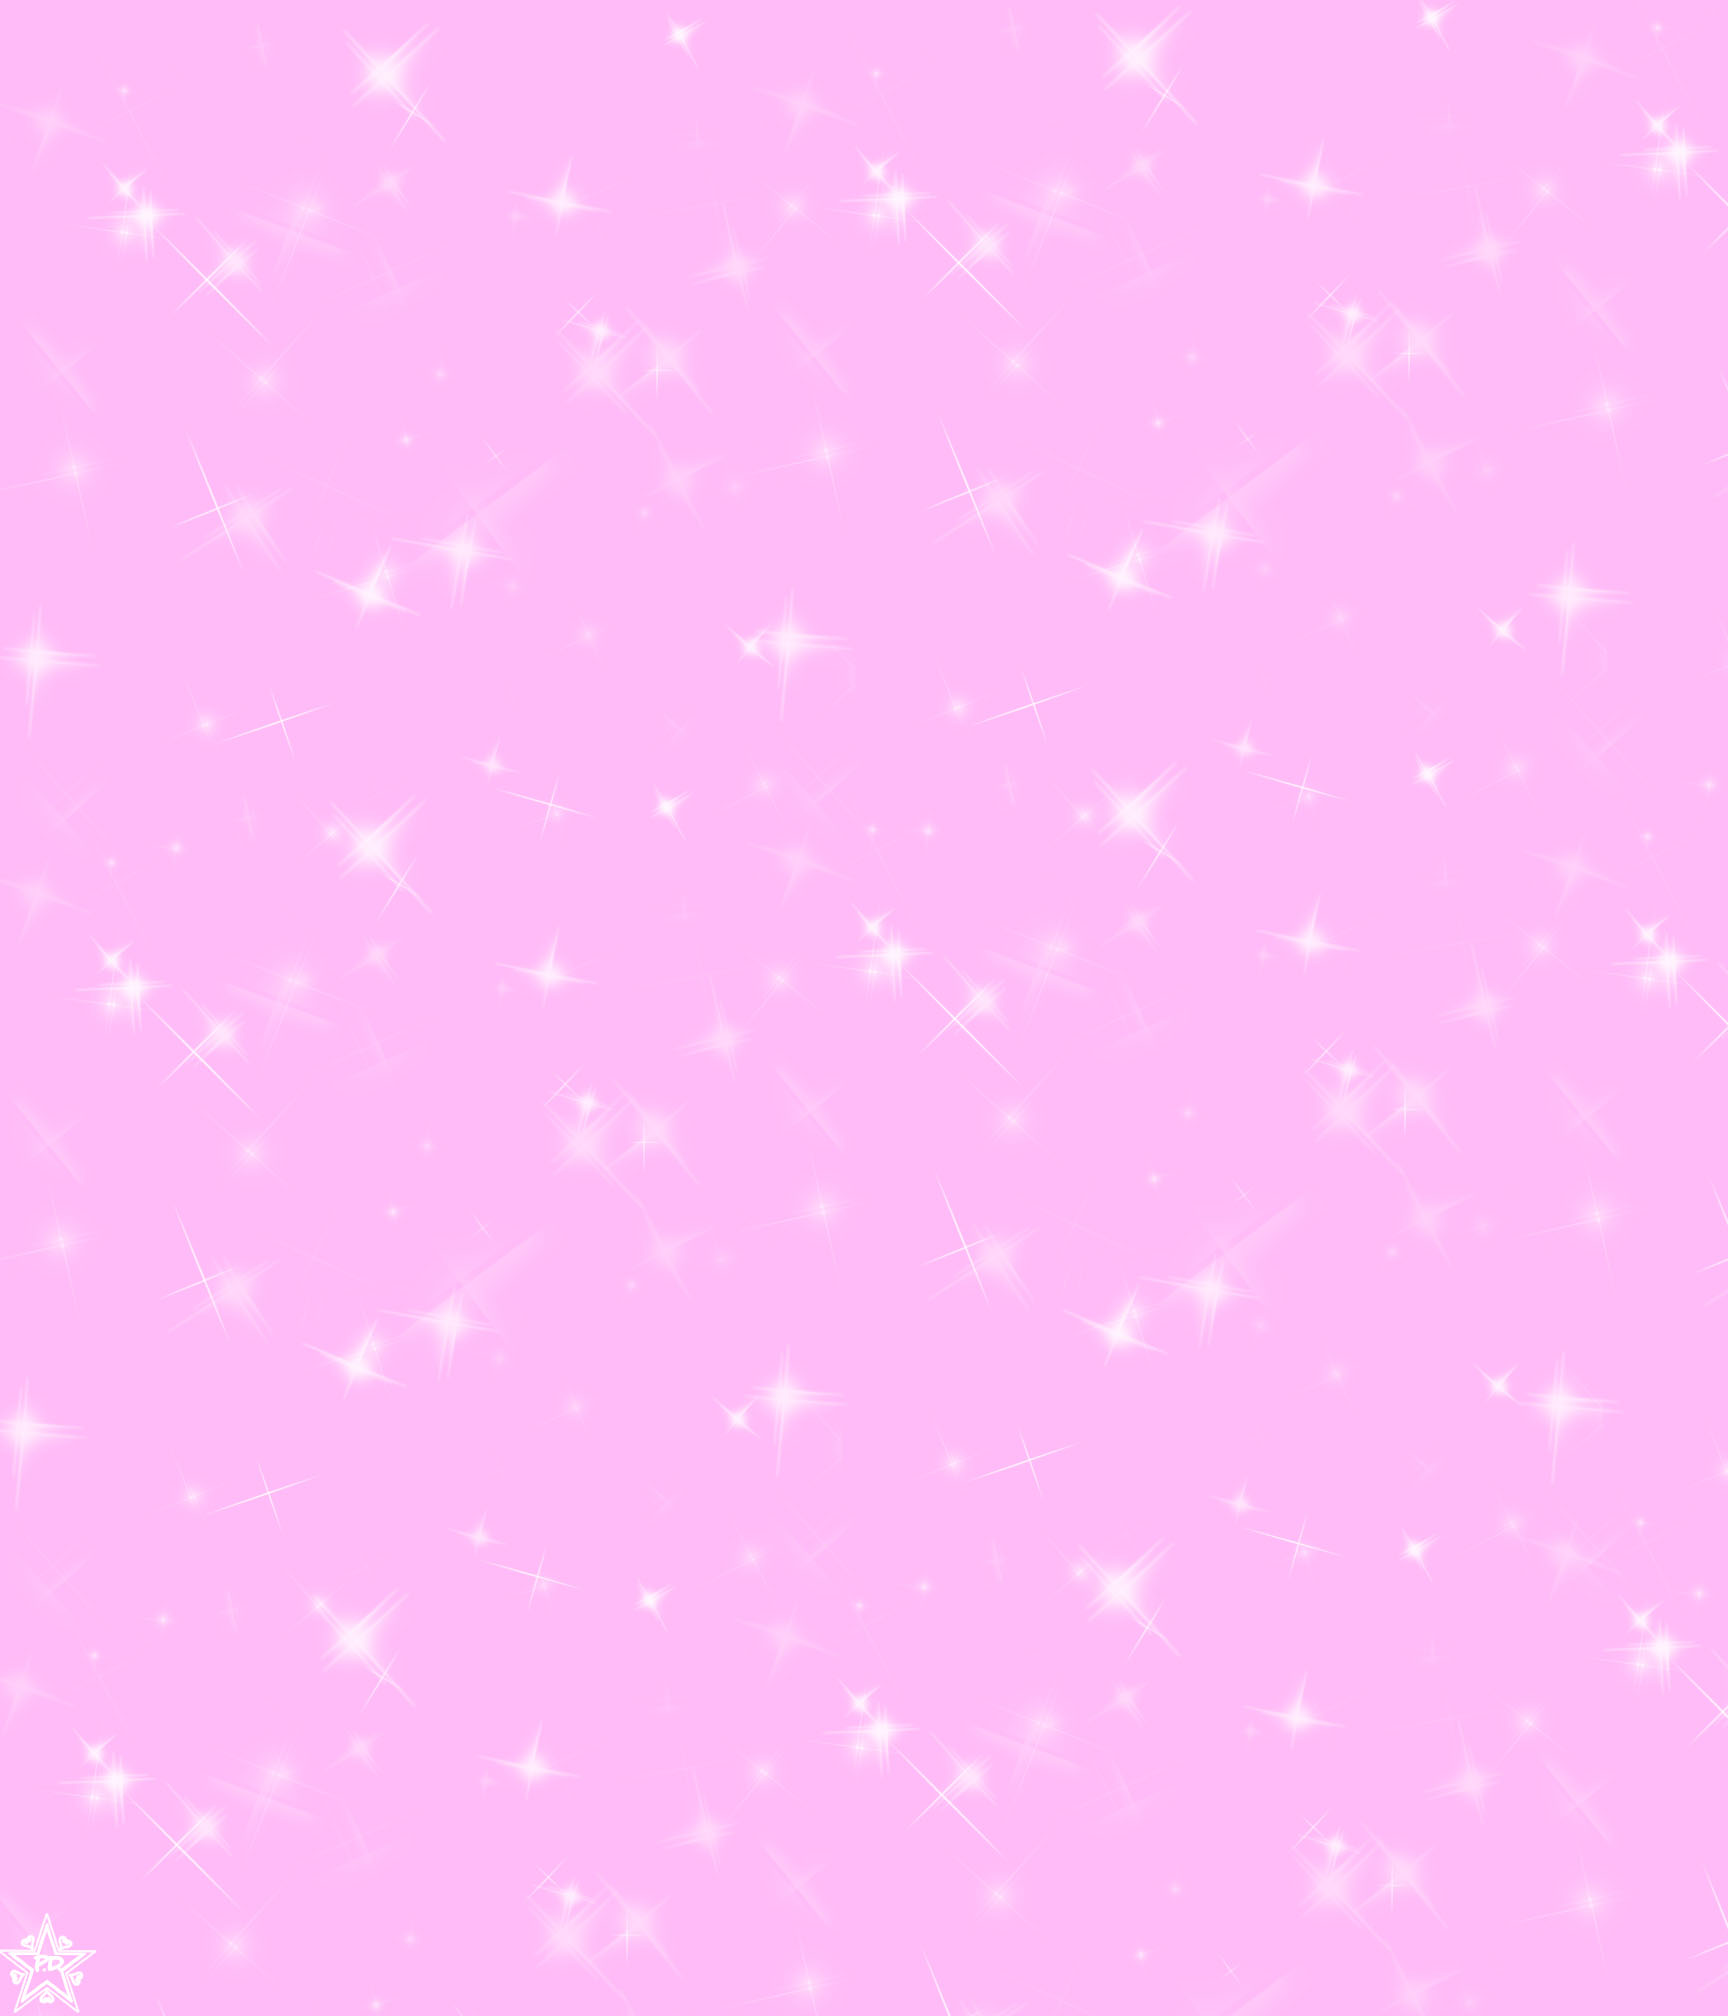 Phông nền lấp lánh hồng: Những điểm nhấn màu hồng sẽ làm cho bất cứ ai cảm thấy thăng hoa, tưởng chừng như đang ngập tràn trong biển cả ánh sáng và màu sắc. Với nền phông lấp lánh hồng sẽ cực kỳ hấp dẫn cho bất kỳ ai yêu thích sự phá cách và mới mẻ. Hãy tận hưởng với không gian lấp lánh hồng ảo diệu này.